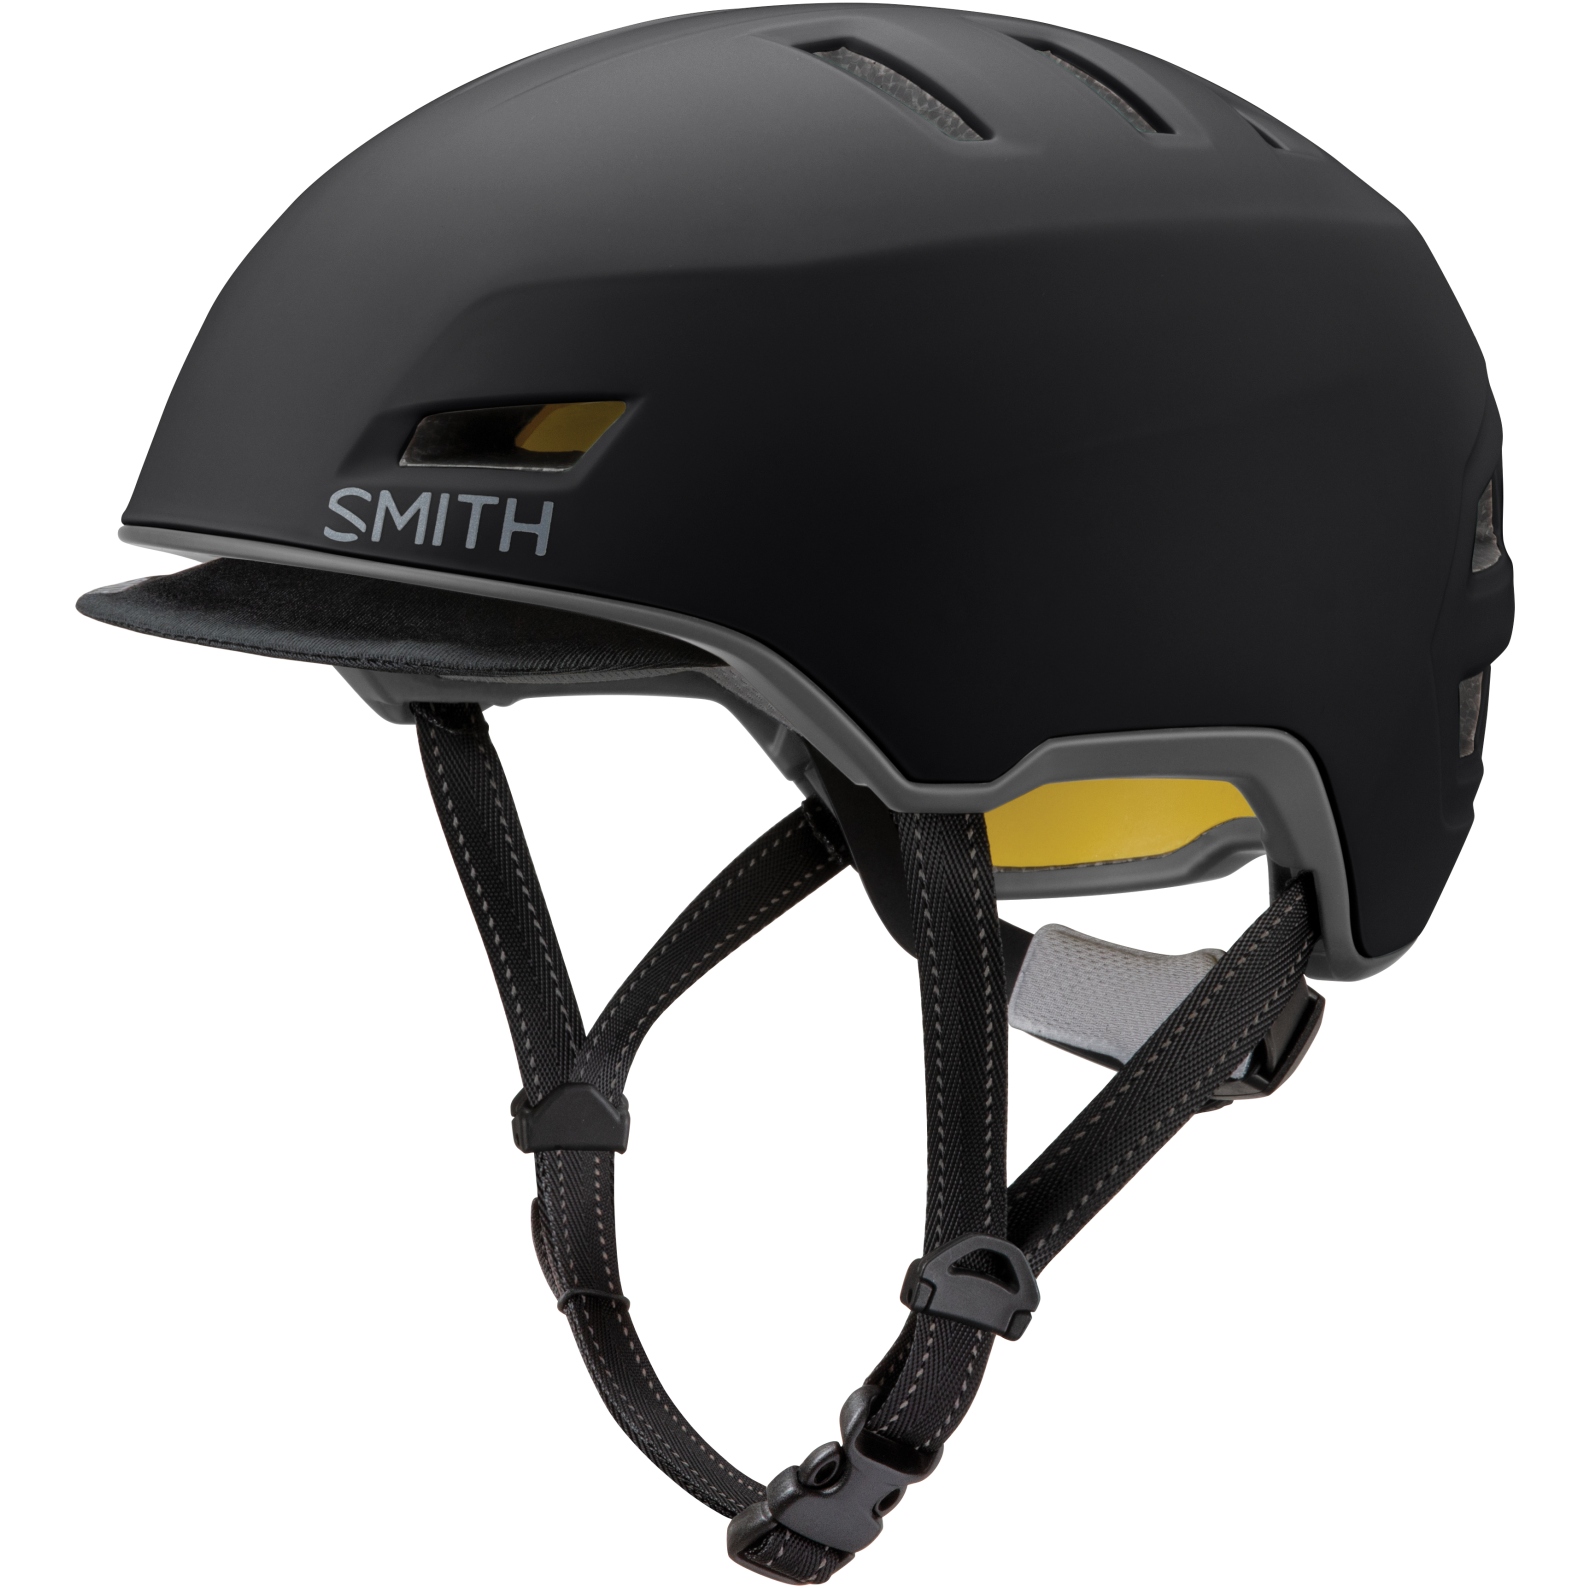 Produktbild von Smith Express MIPS Helm - Black Matte Cement